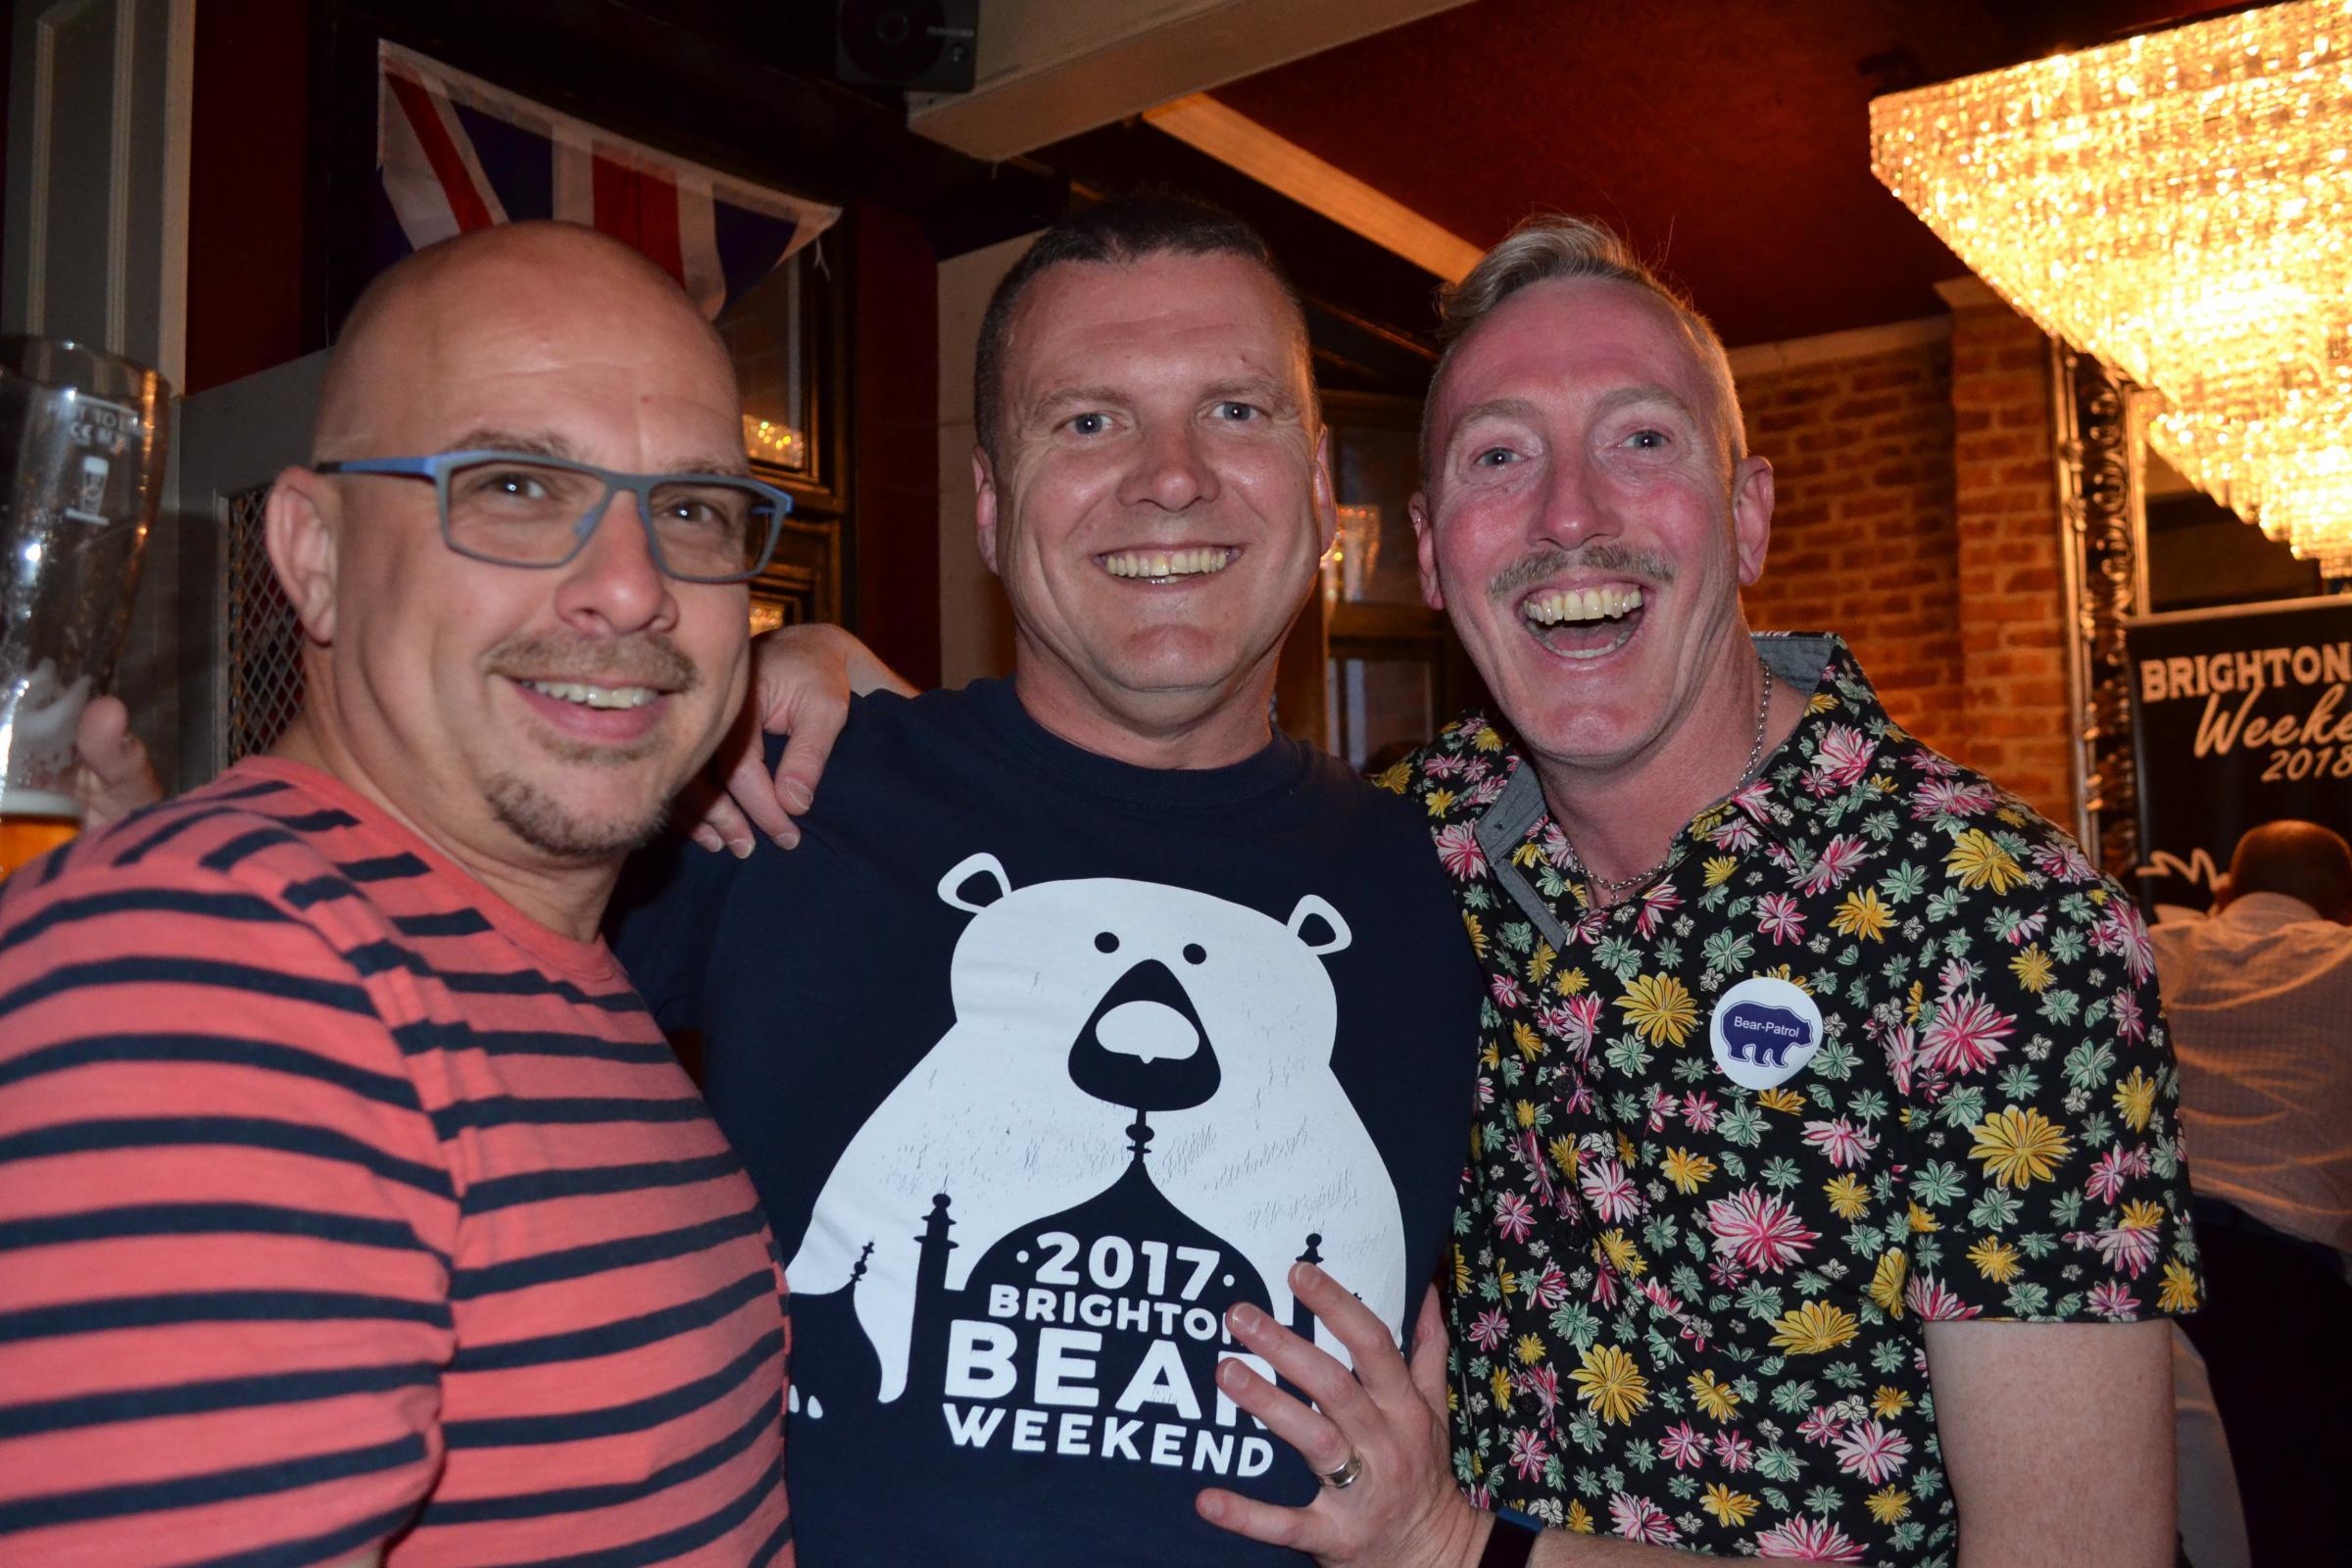 Brighton Bear Weekend is returning in 2021